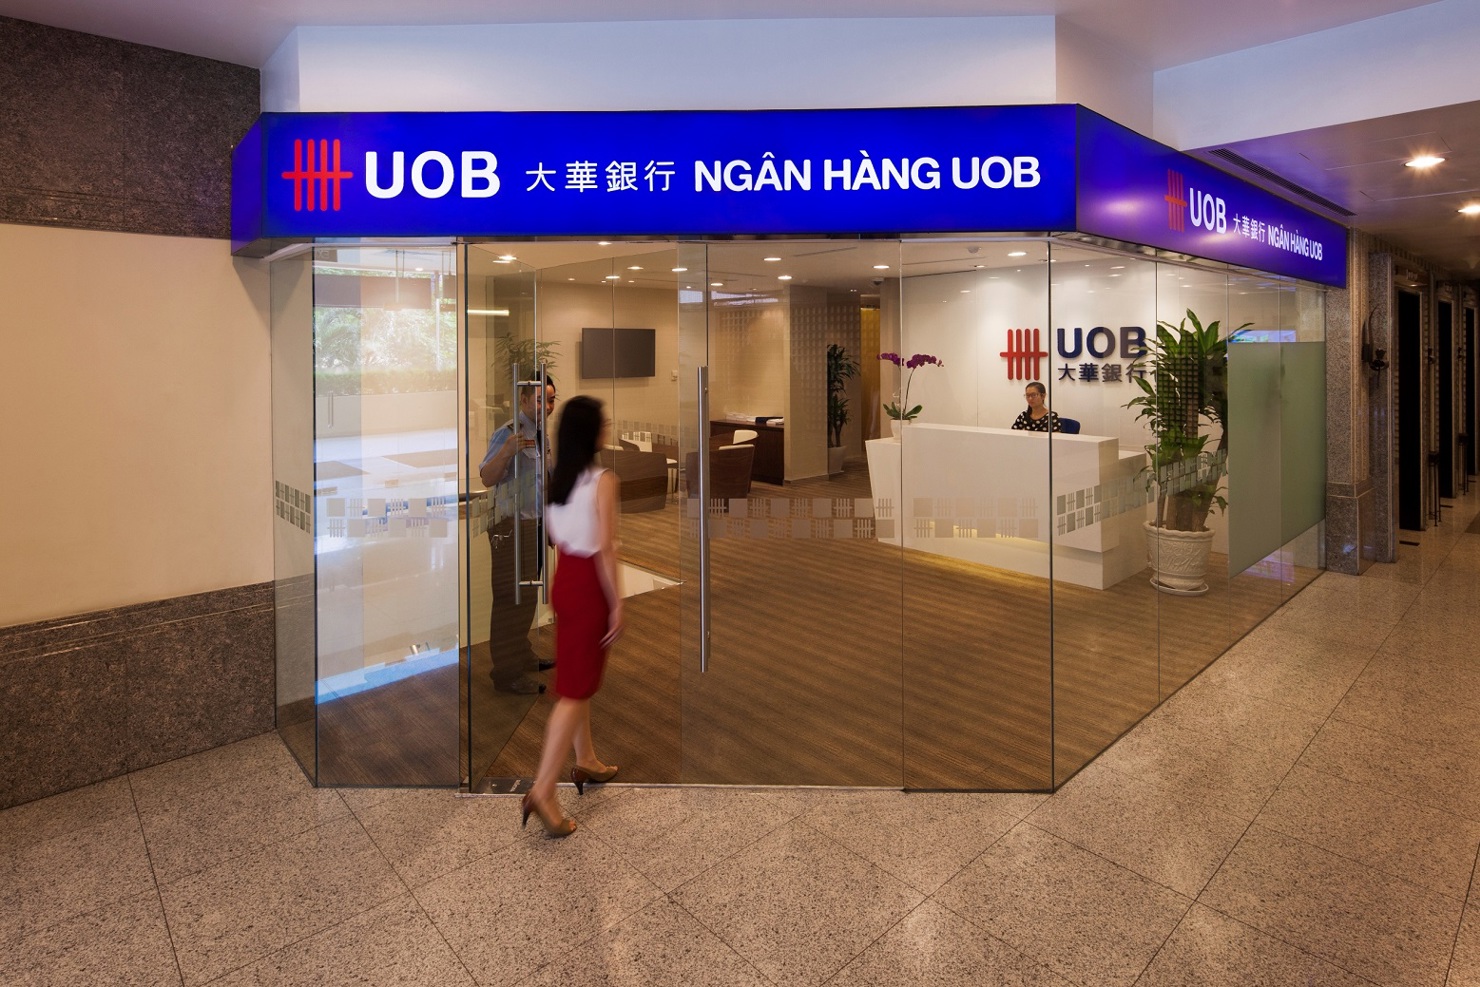 Ngân hàng United Overseas Bank là ngân hàng Singapore đầu tiên được chấp thuận sơ bộ  thành lập ngân hàng con 100% vốn nước ngoài tại Việt Nam. Nguồn: ob.com.sg